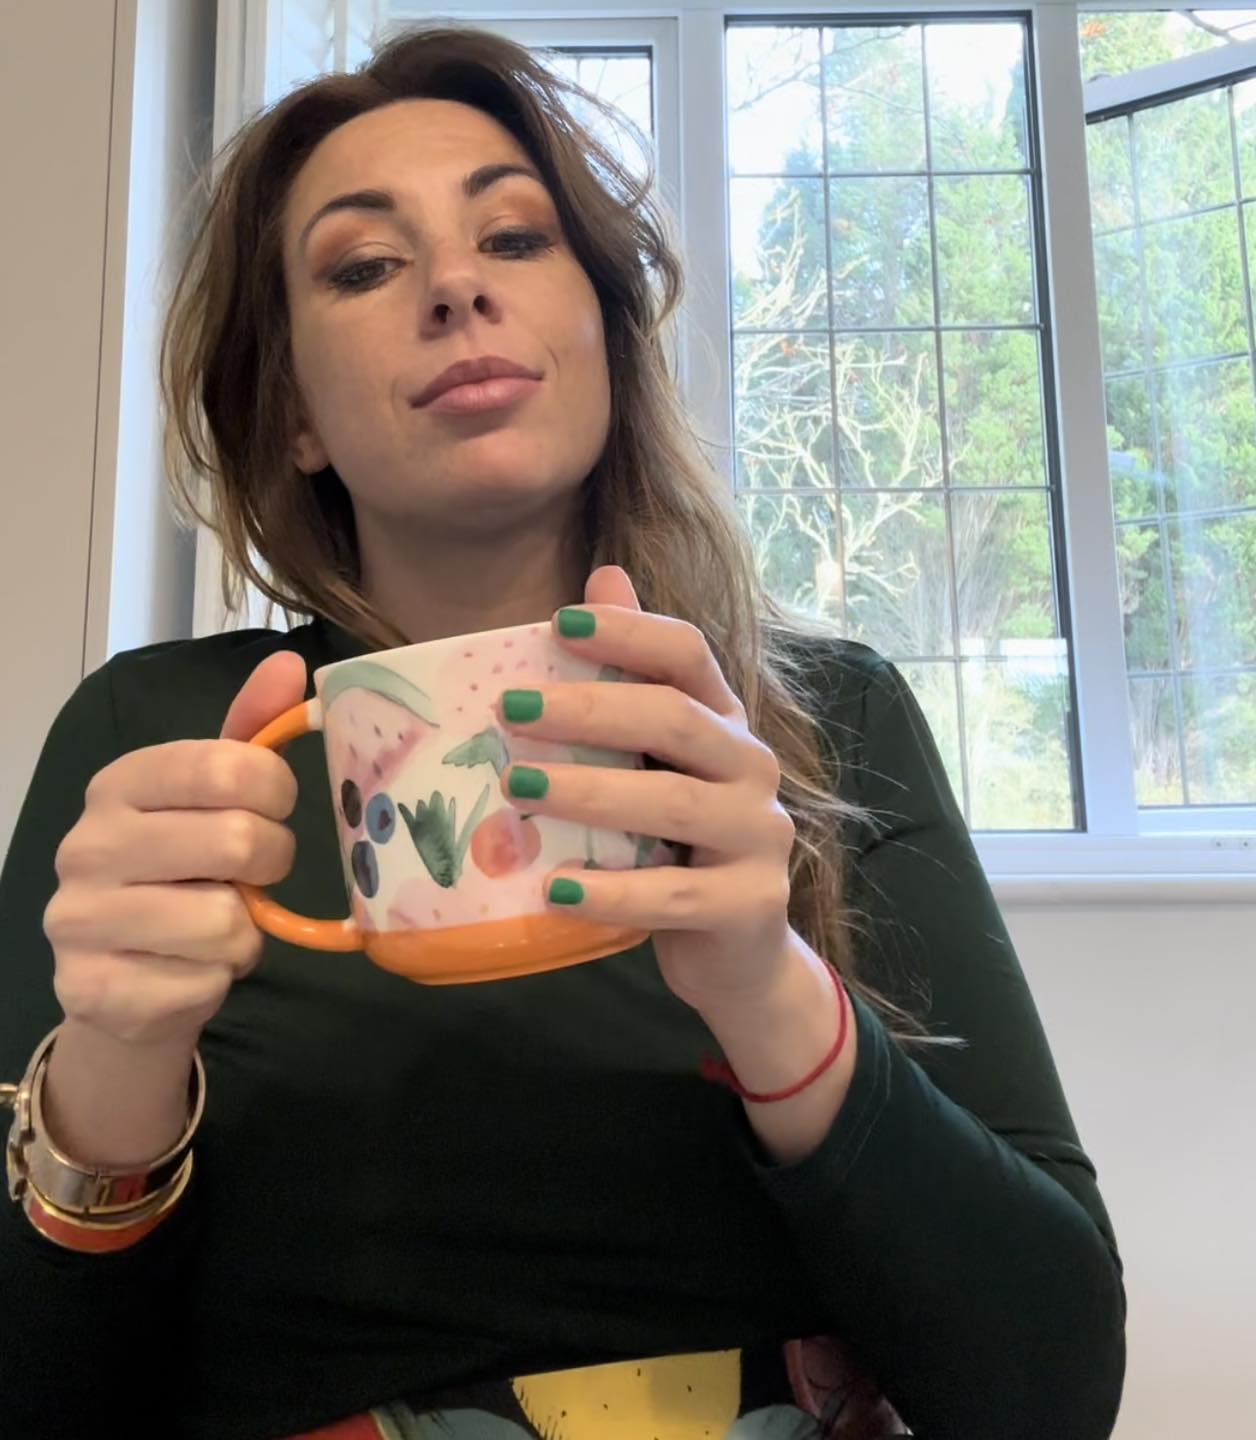 Katy enjoying a cup of tea